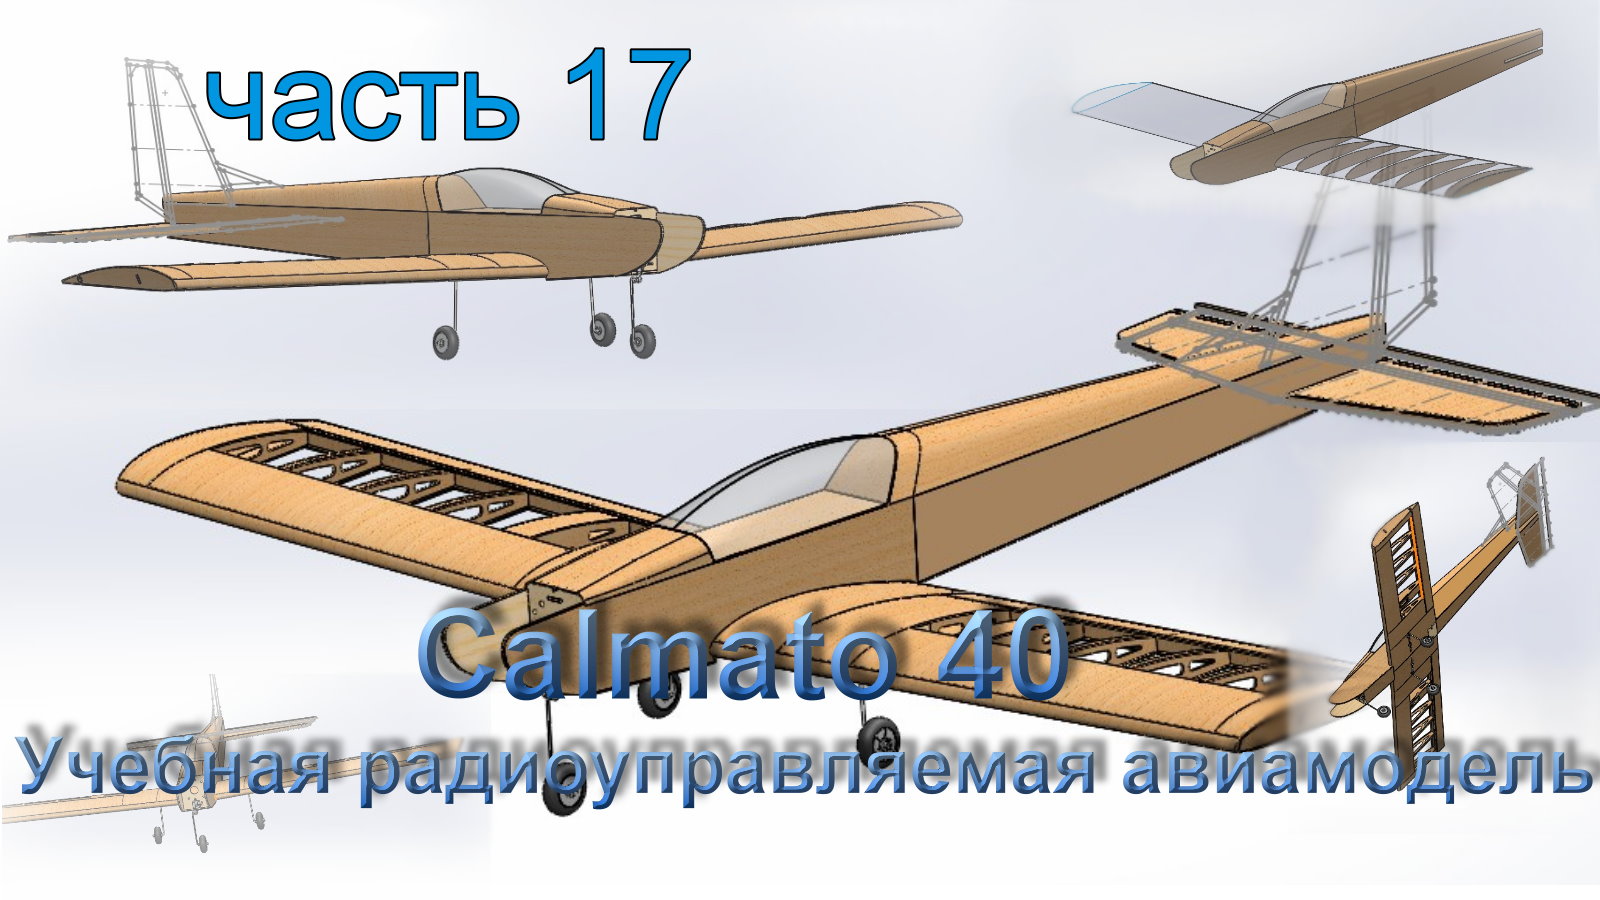 Учебная радиоуправляемая авиамодель Calmato 40 (часть 17)